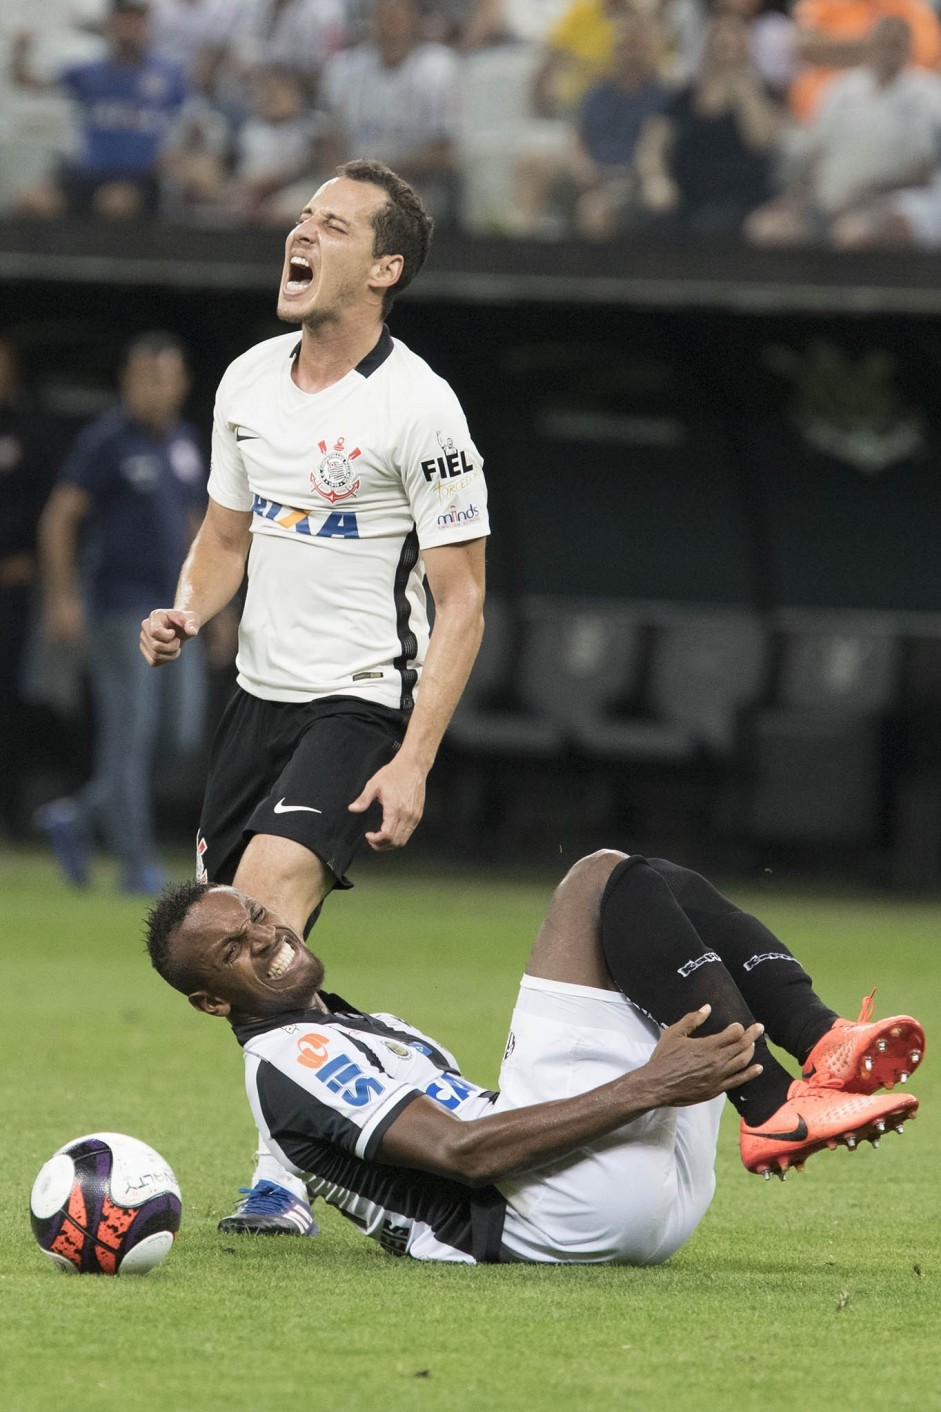 Rodriguinho recebe dura entrada de jogador do Santos